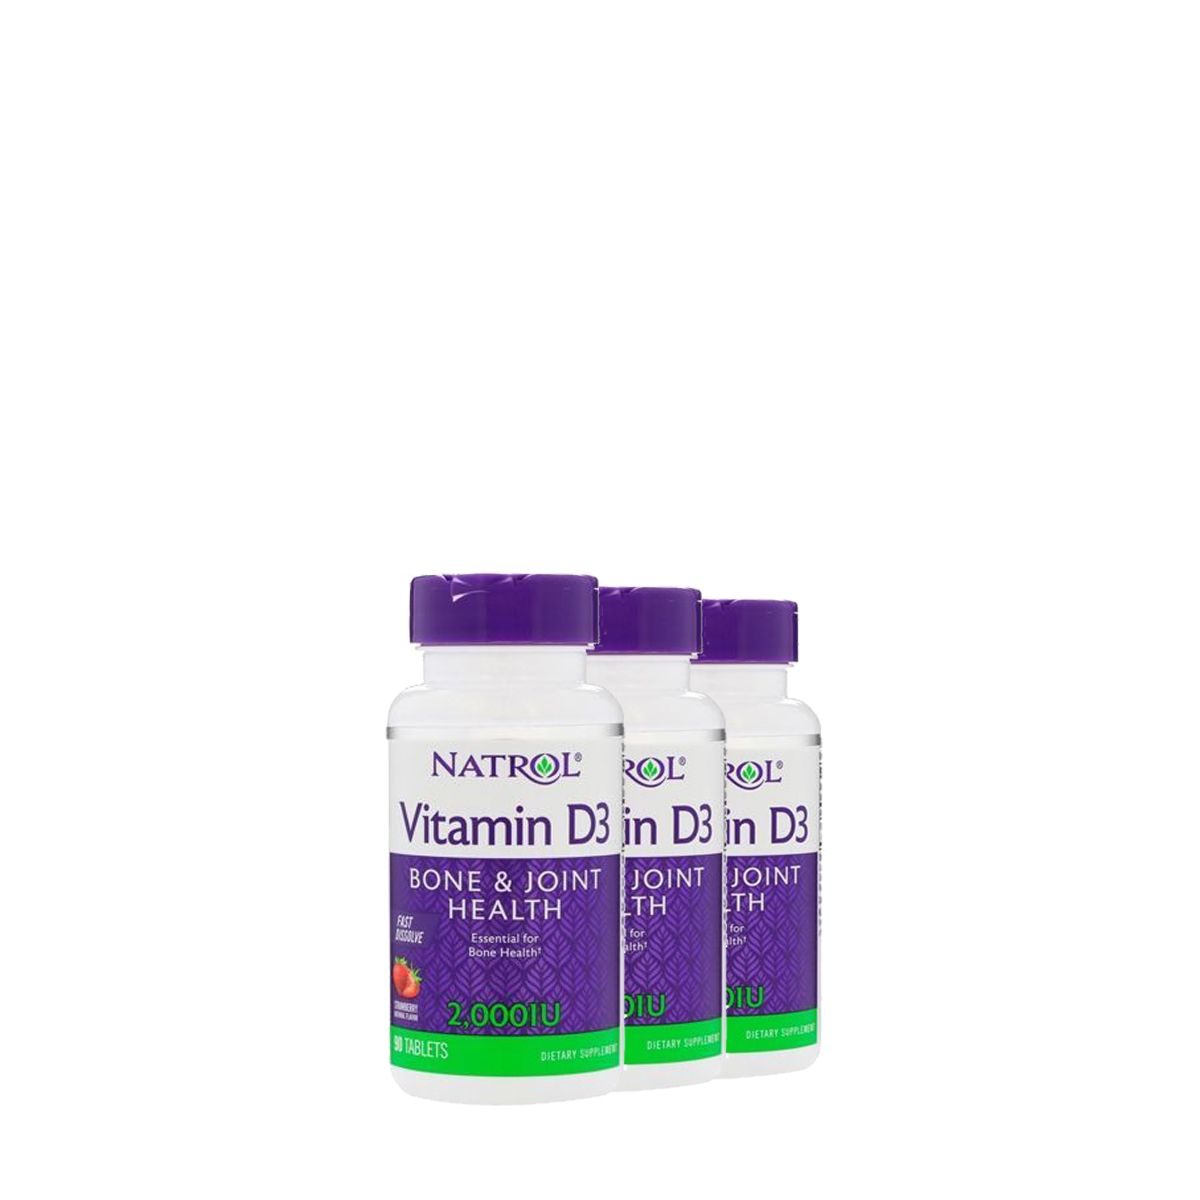 Gyors felszívódású D-vitamin 2000 IU, Natrol Vitamin D3 2000 IU, 3x90 tabletta